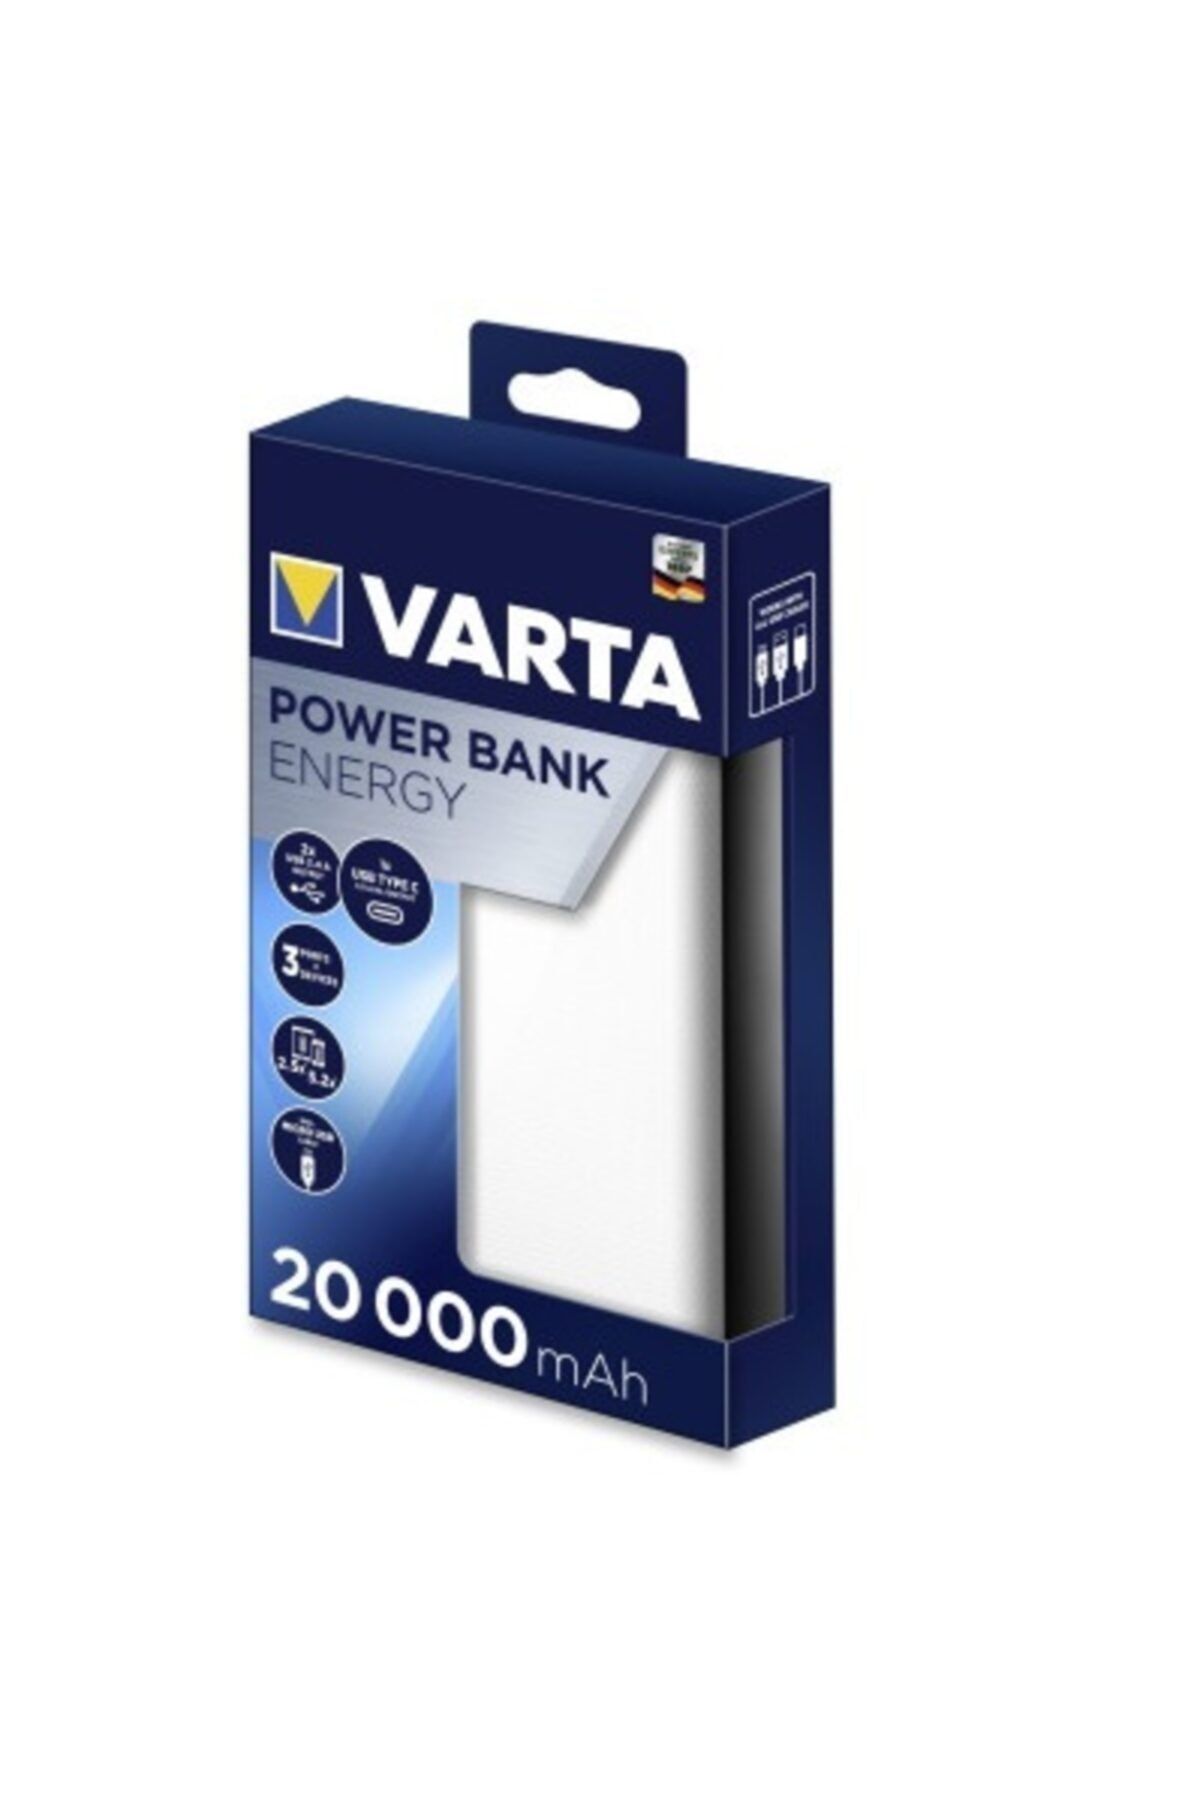 Varta Power Bank Energy 20000 Mah